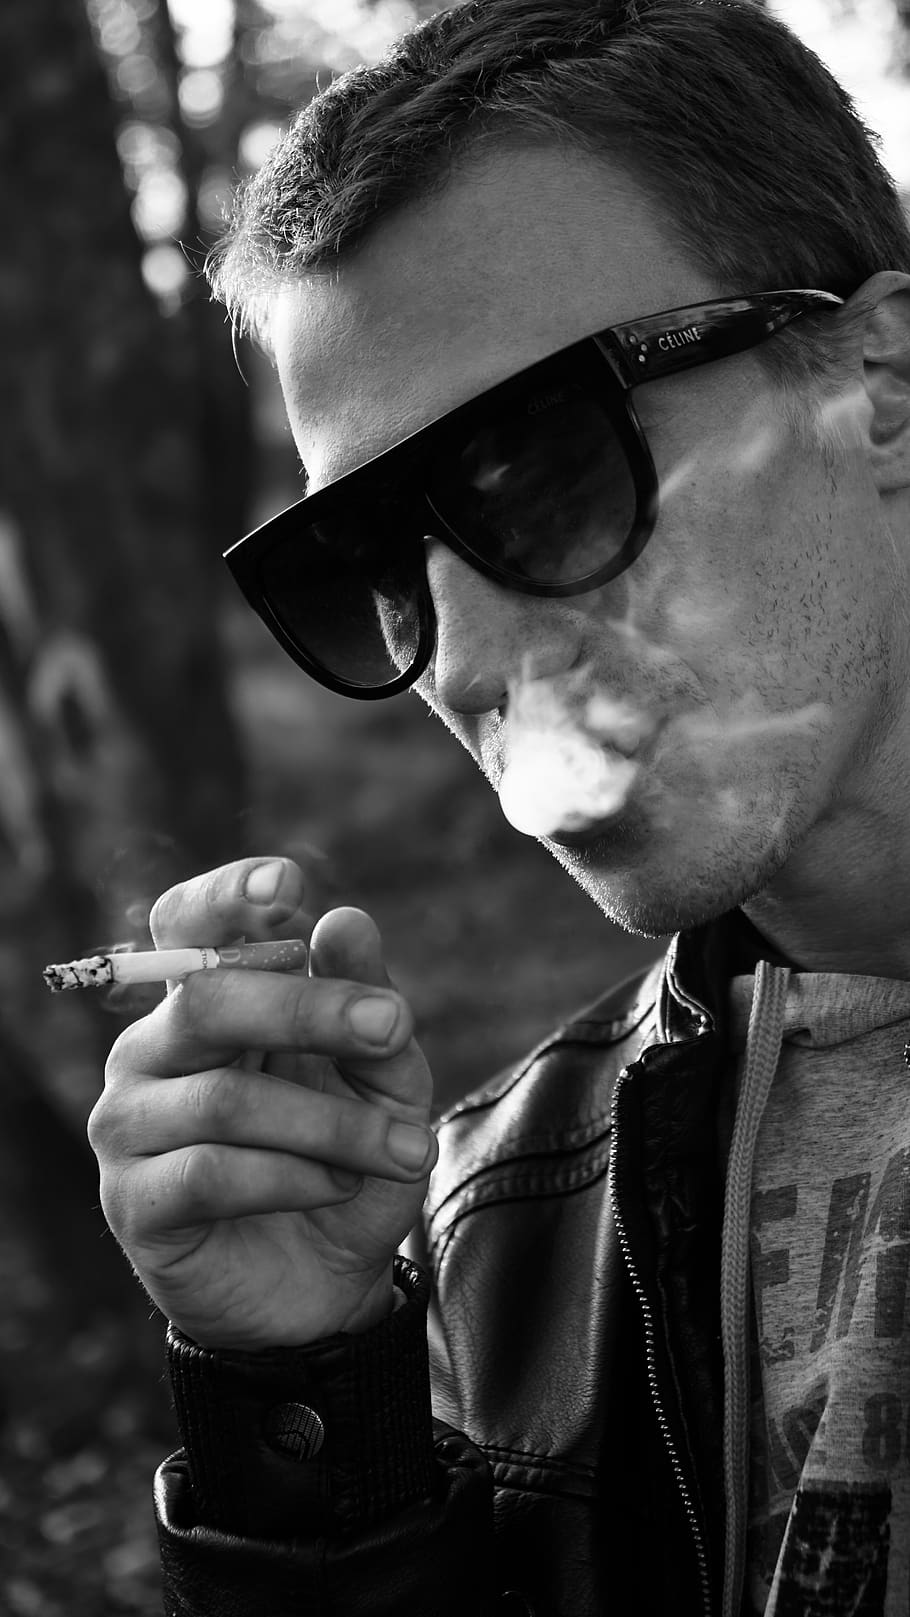 merokok, rokok, kebiasaan, manusia, tembakau, nikotin, perokok, kacamata, satu orang, orang sungguhan